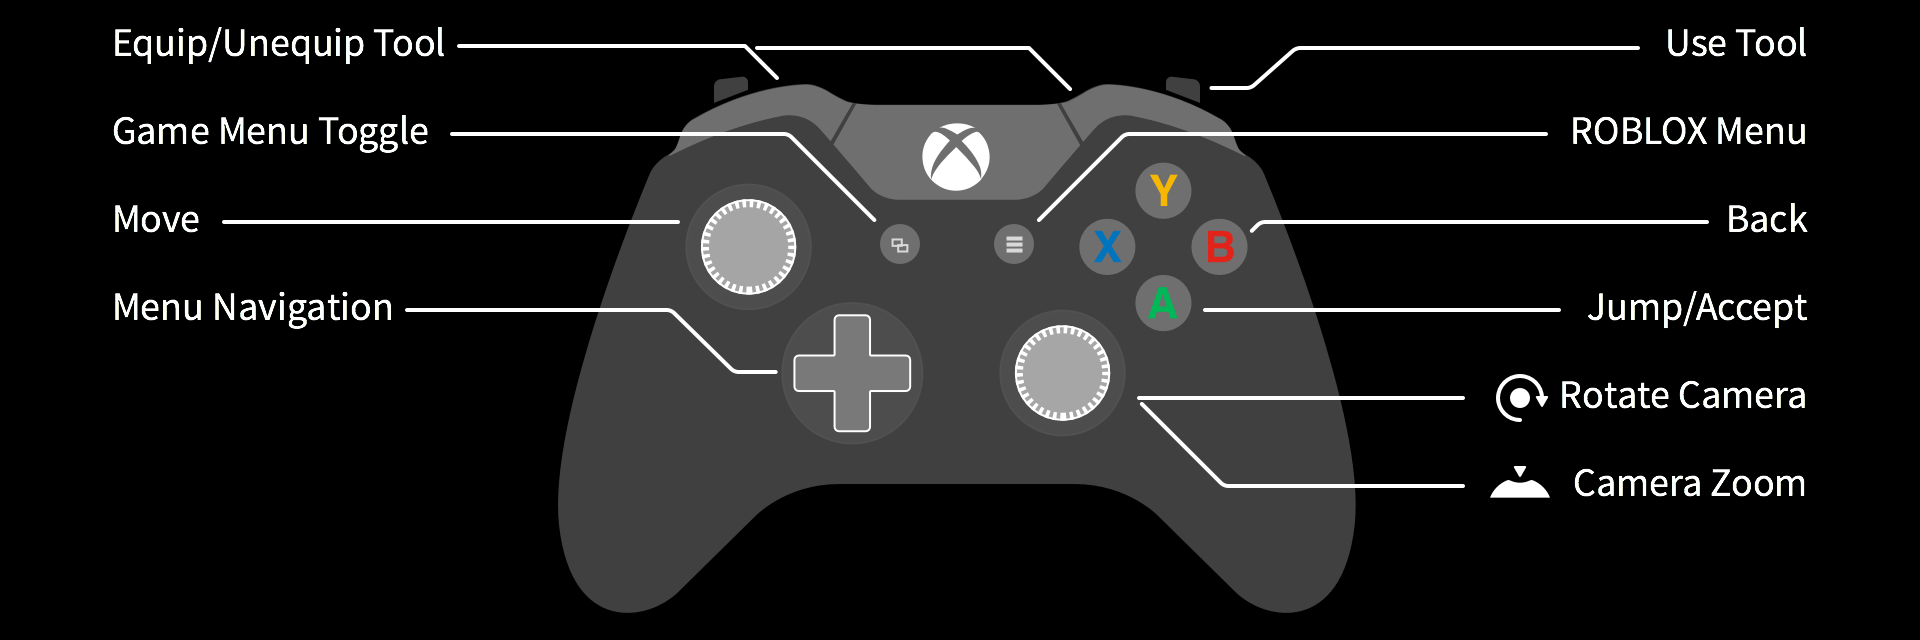 Xbox One App Como Jugar Un Juego De Roblox Roblox Soporte